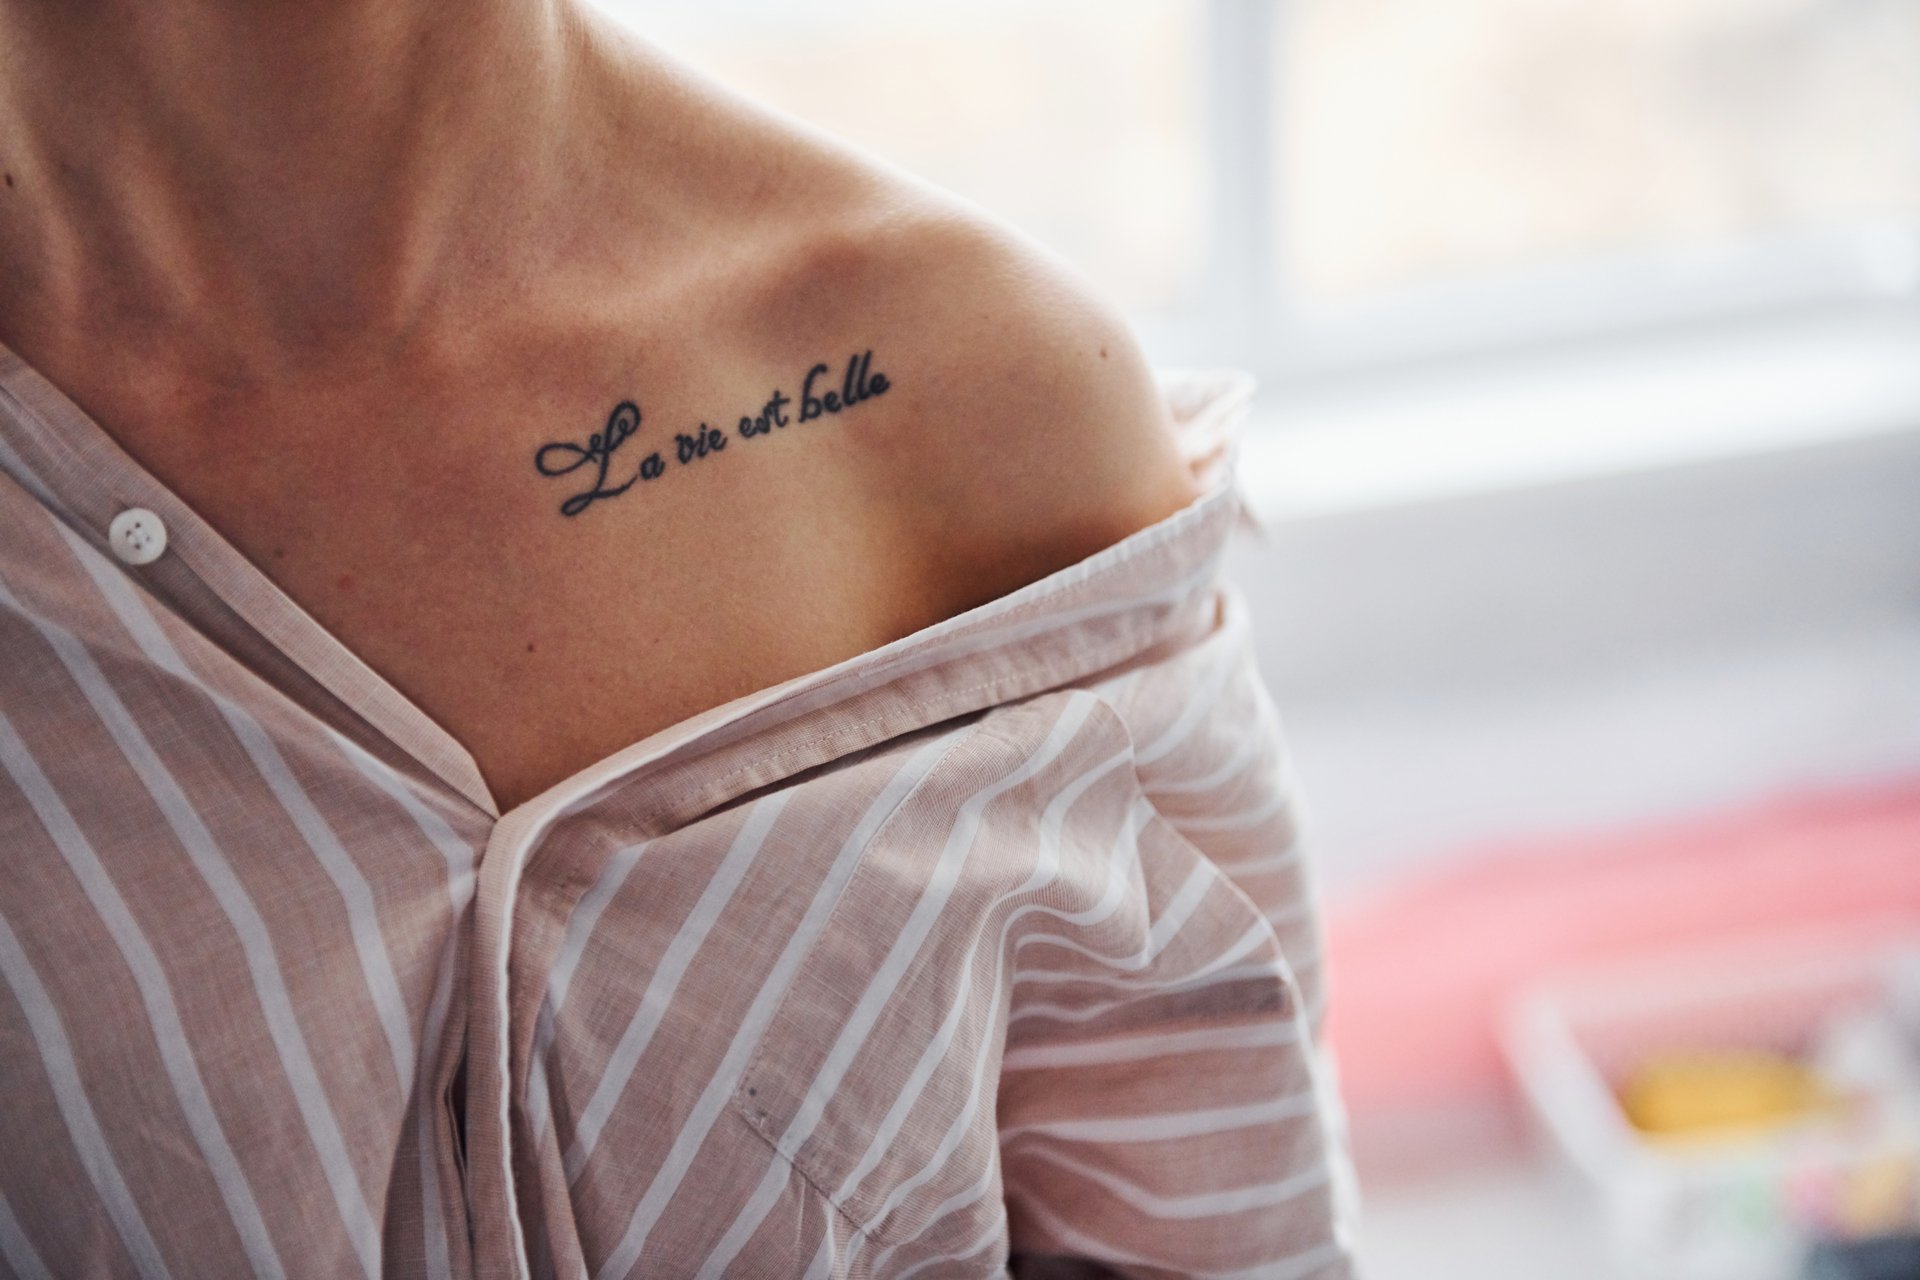 Kobieta ma na ramieniu tatuaż z napisem "La vie est belle", co oznacza "Życie jest piękne"